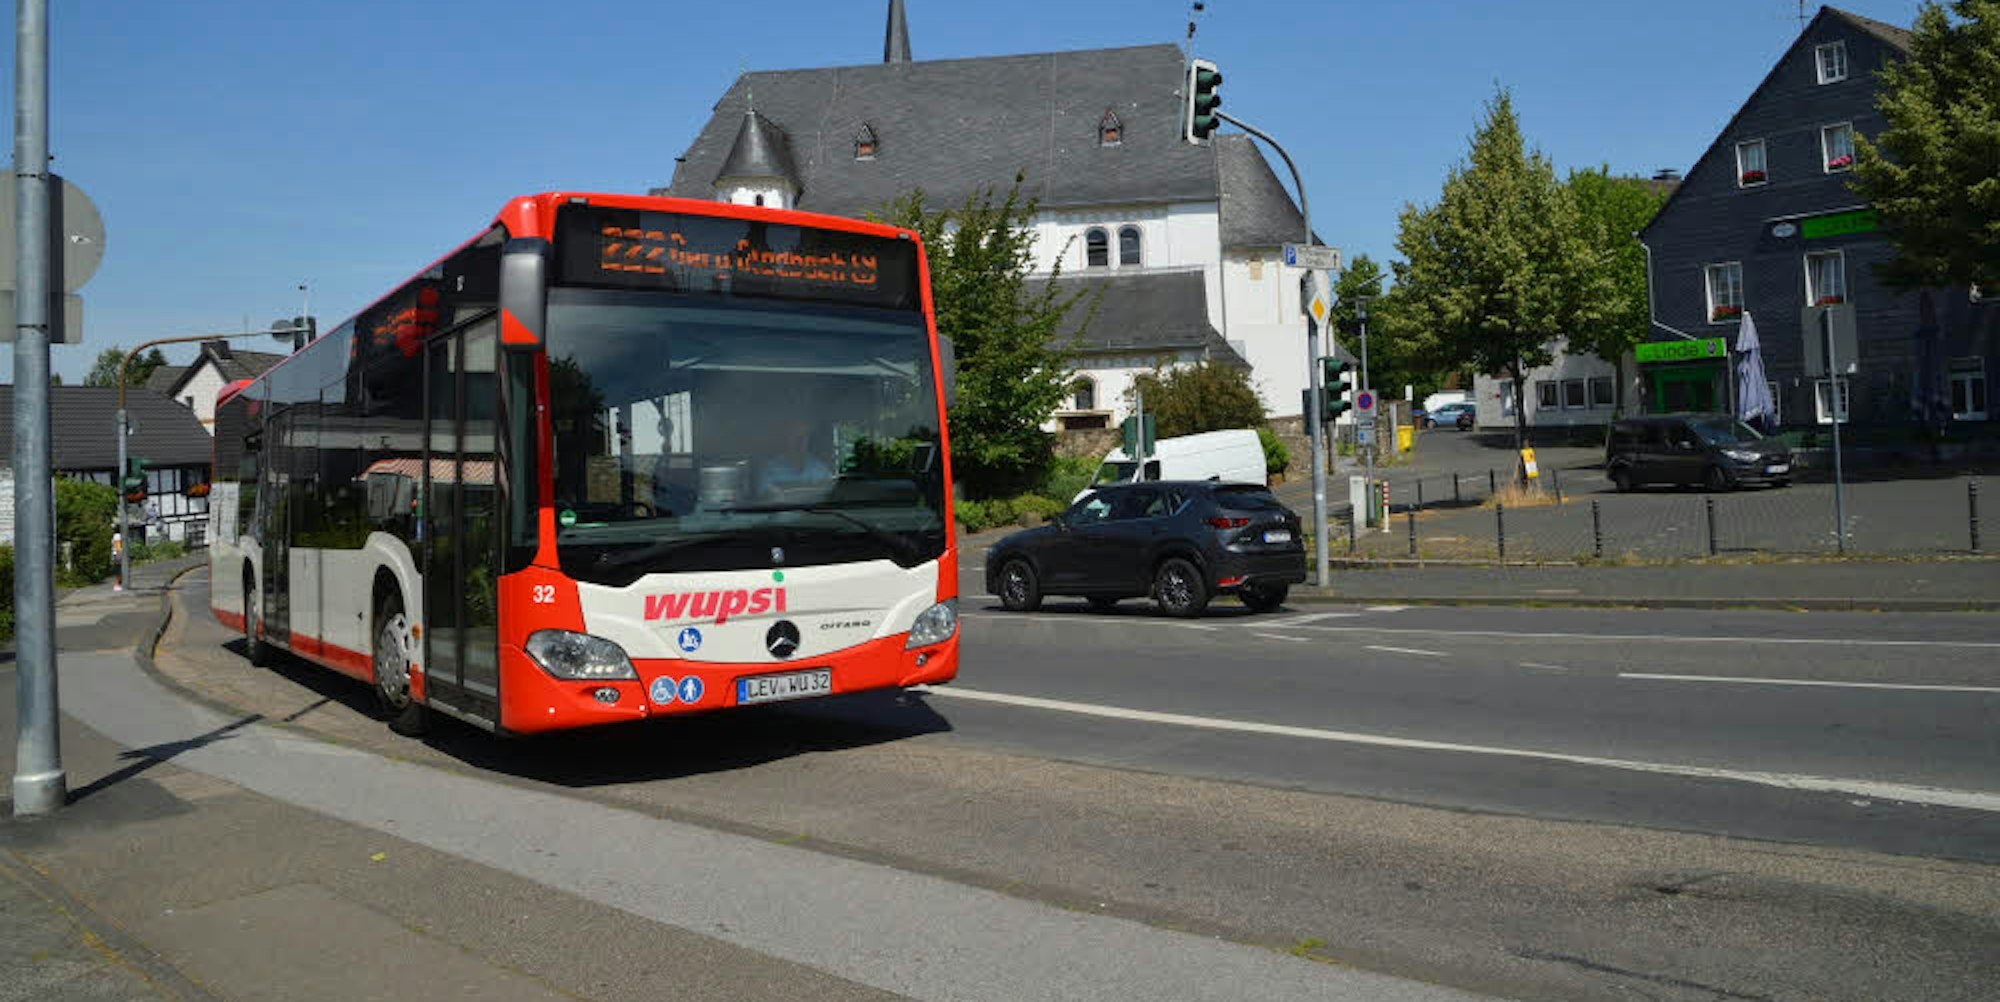 Die Wupsi-Buslinie 222 zwischen Gladbachs S-Bahnhof und Leverkusen soll künftig mit Elektorbussen betrieben werden.